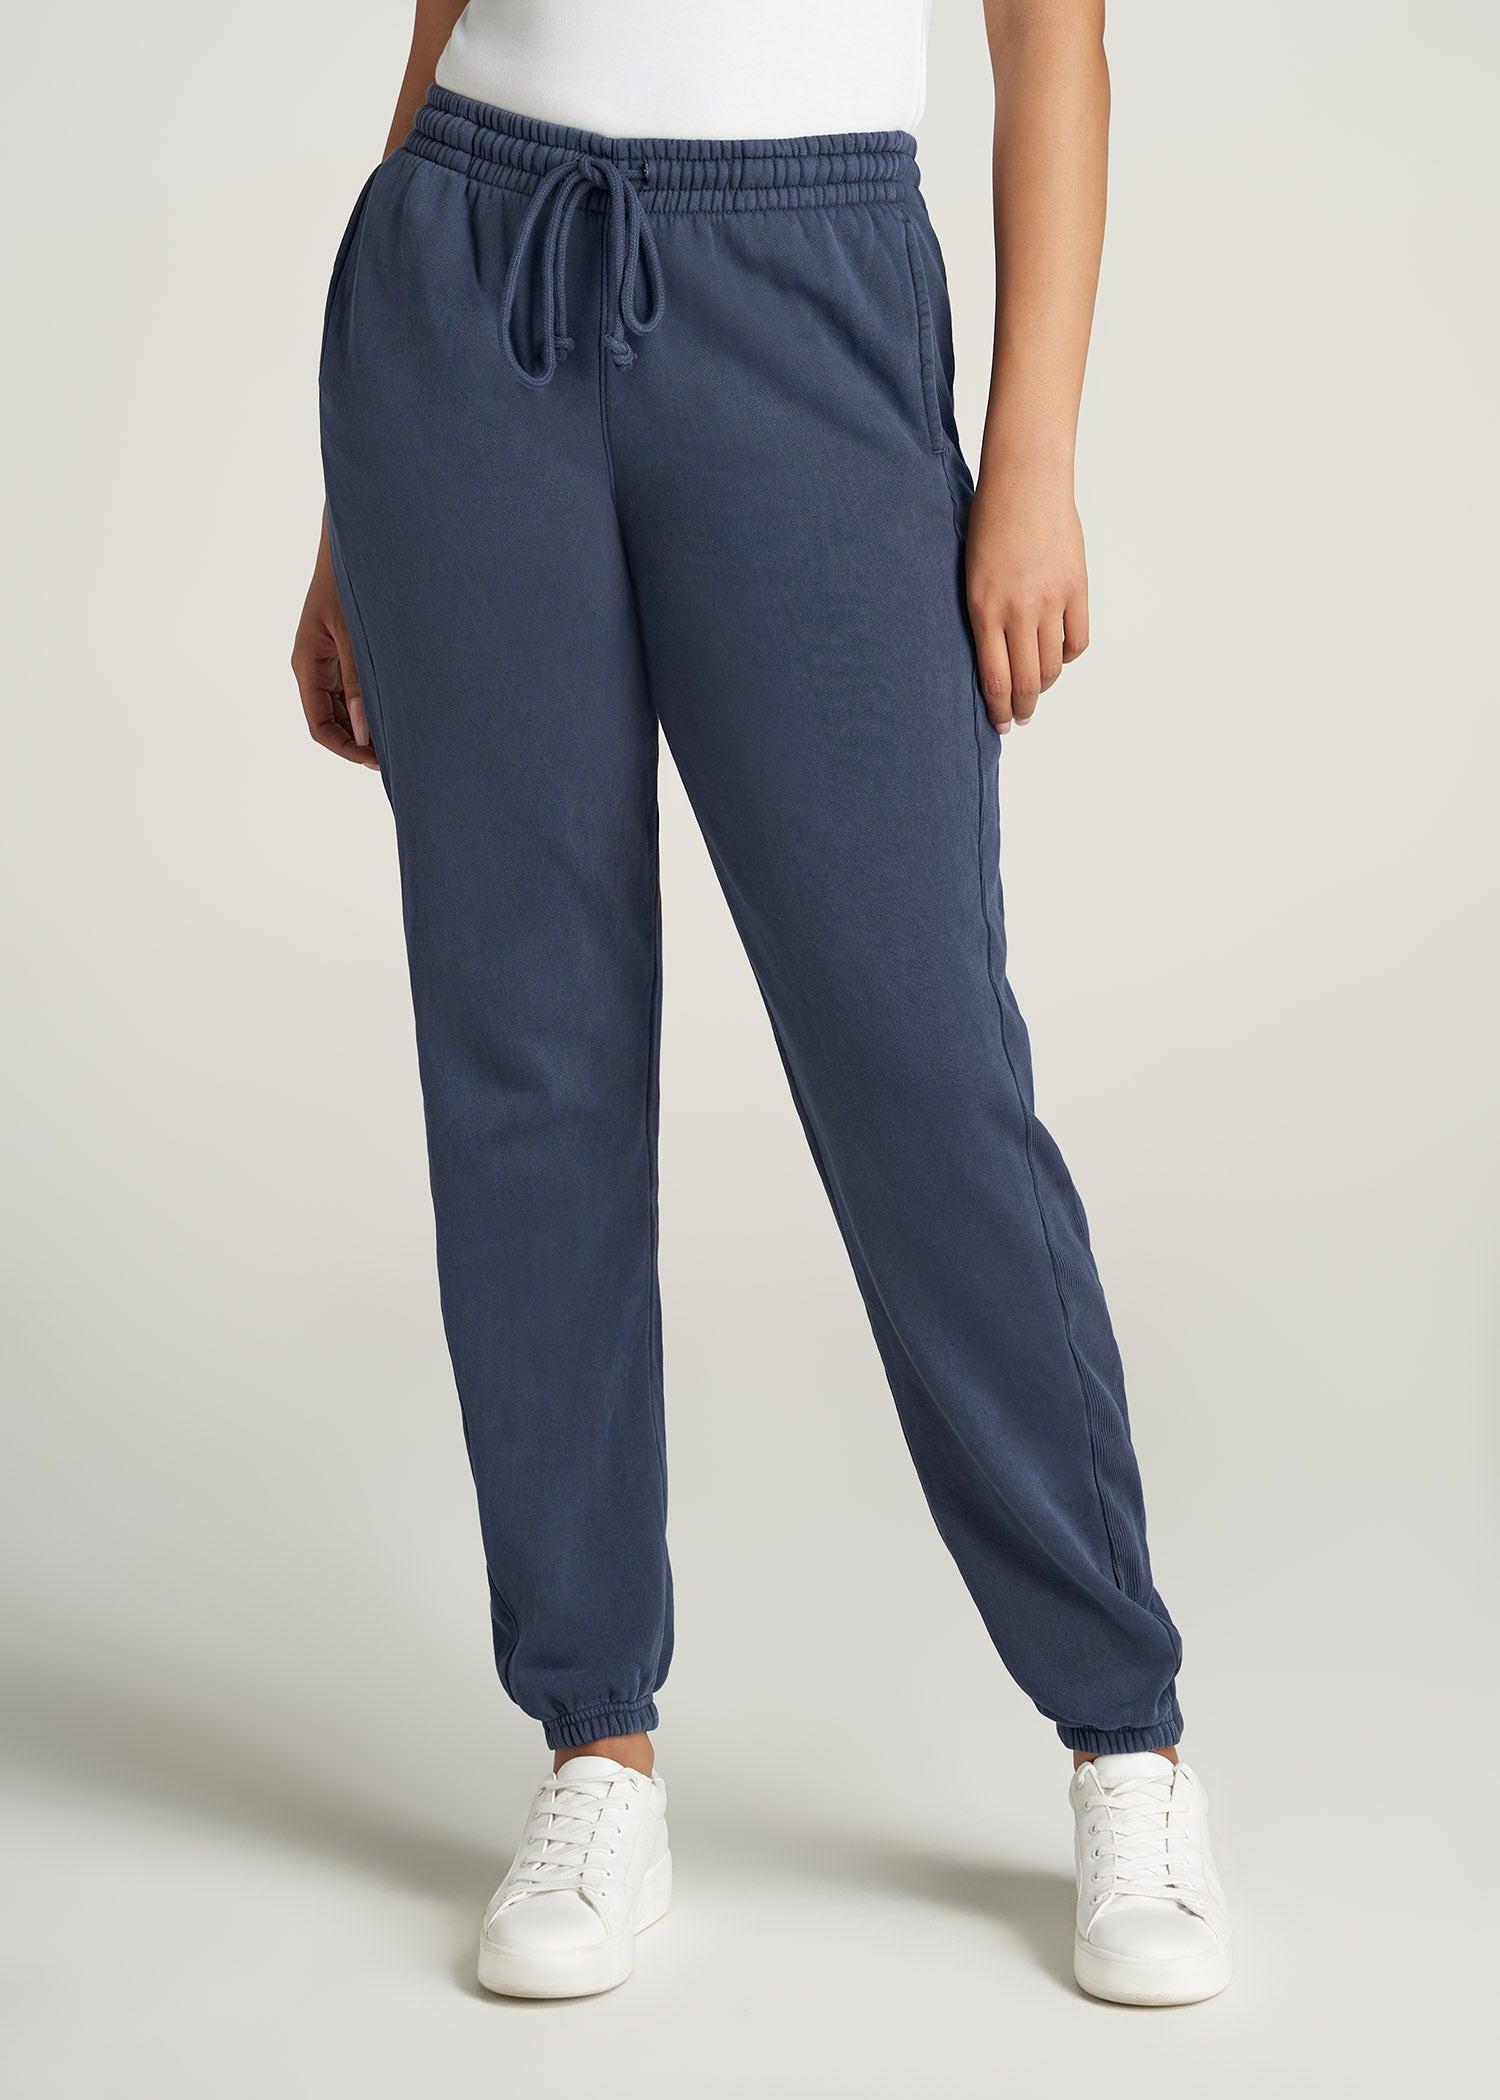 Wearever Fleece Open-Bottom Sweatpants for Tall Women Midnight Blue, American Tall